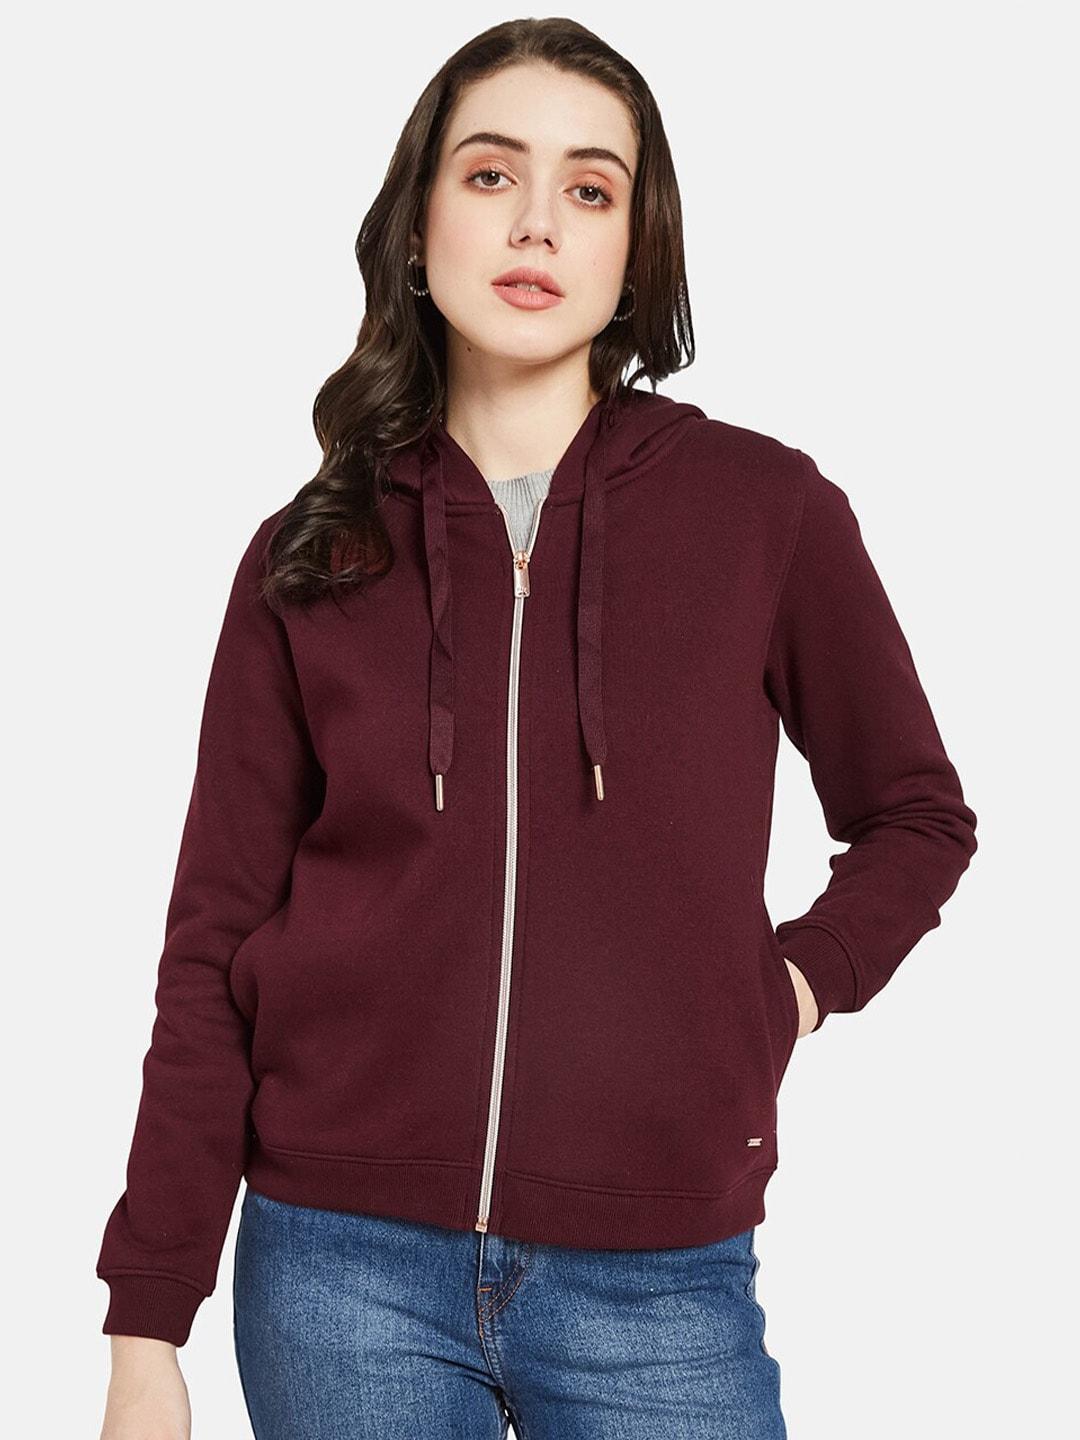 mettle hooded fleece sweatshirt